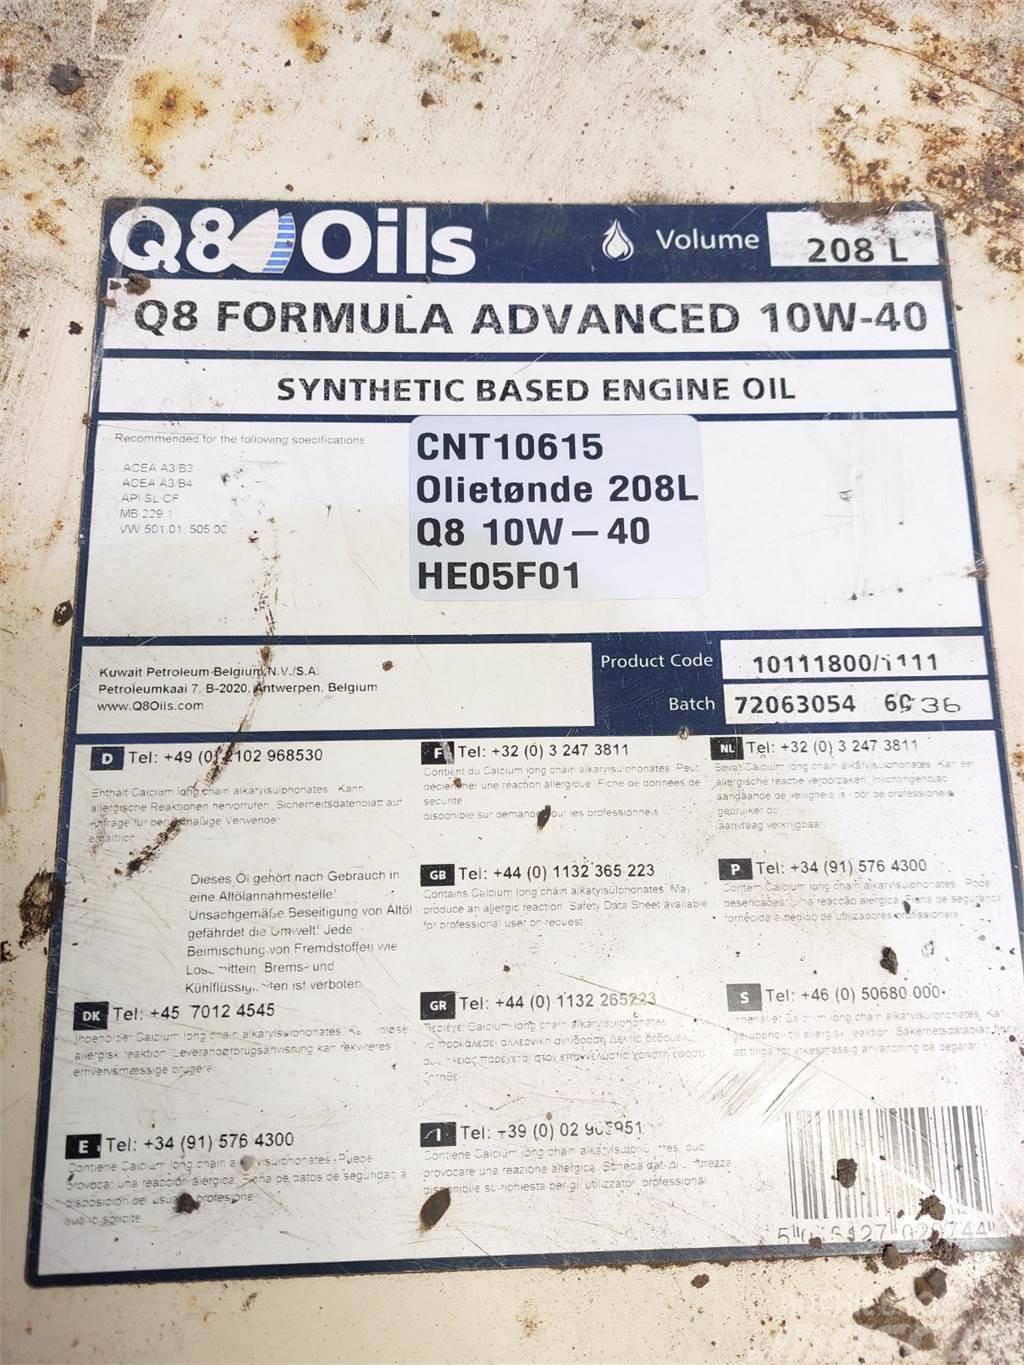  Oiletønde 208L Q8 10W-40 Synthetich Based Altele